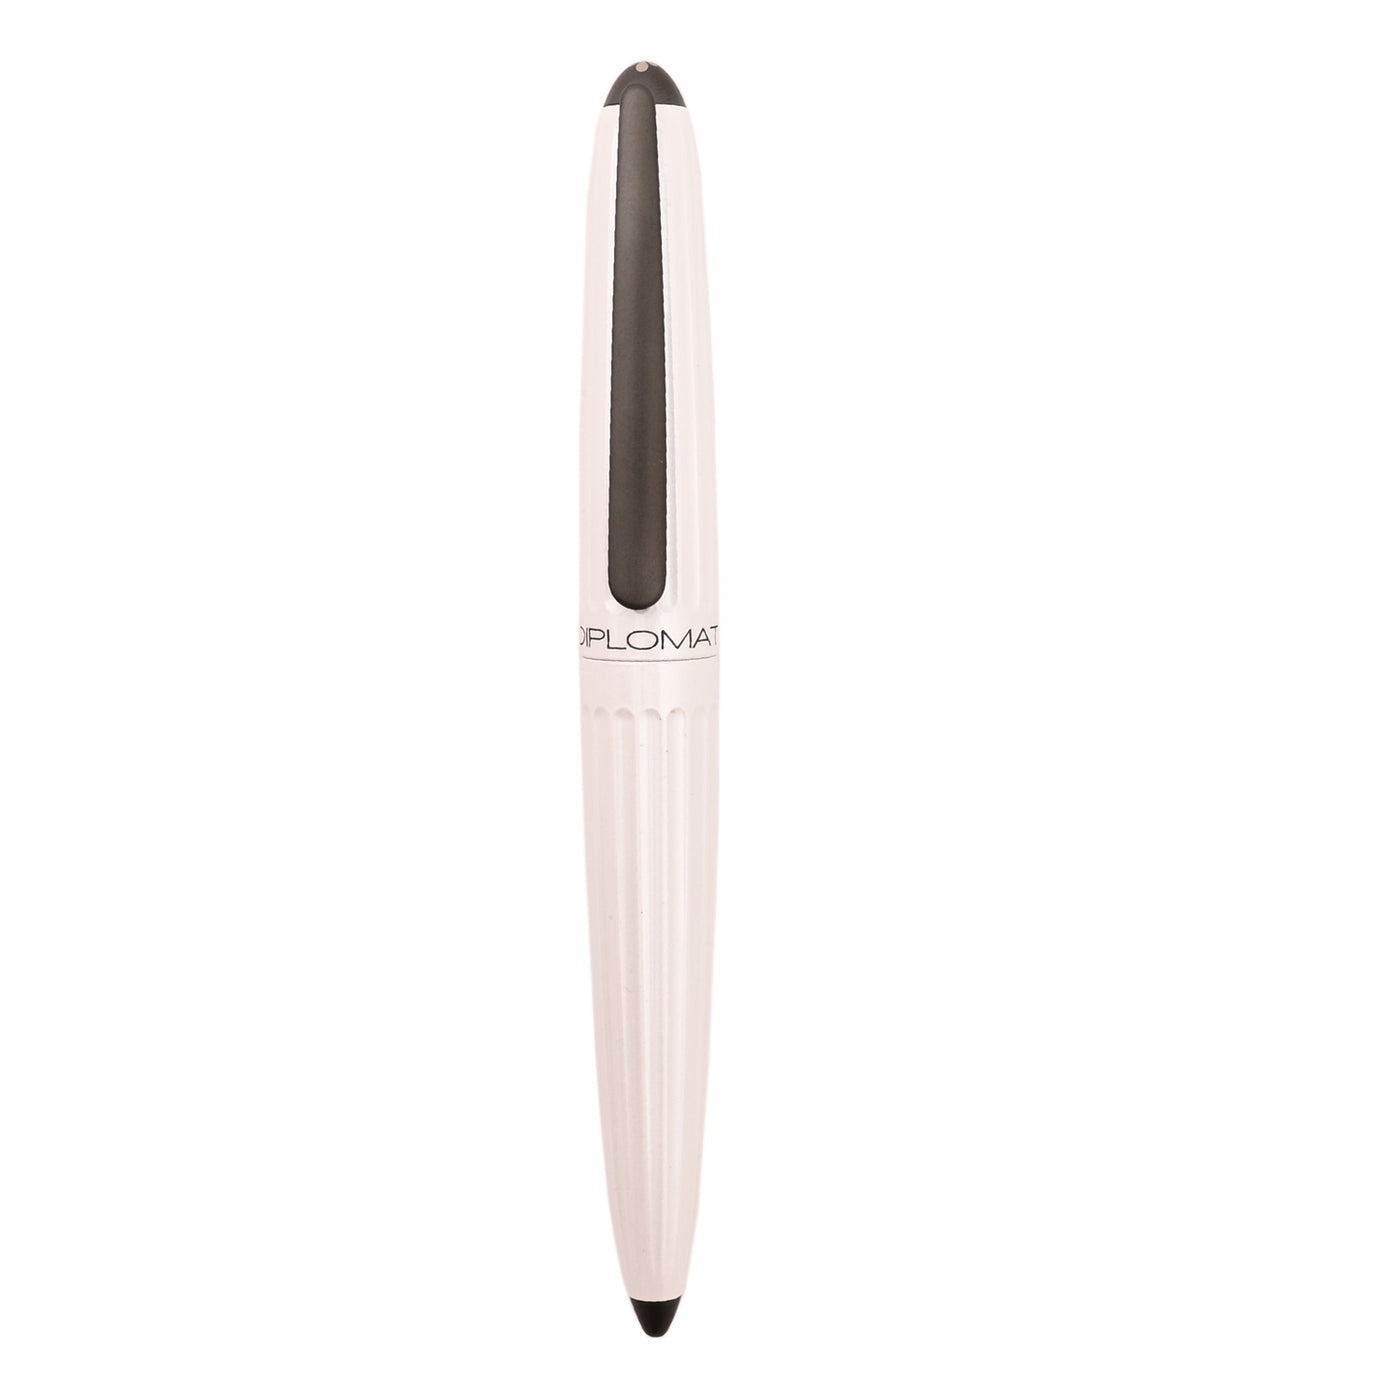 Diplomat Aero Fountain Pen - Pearly White 4